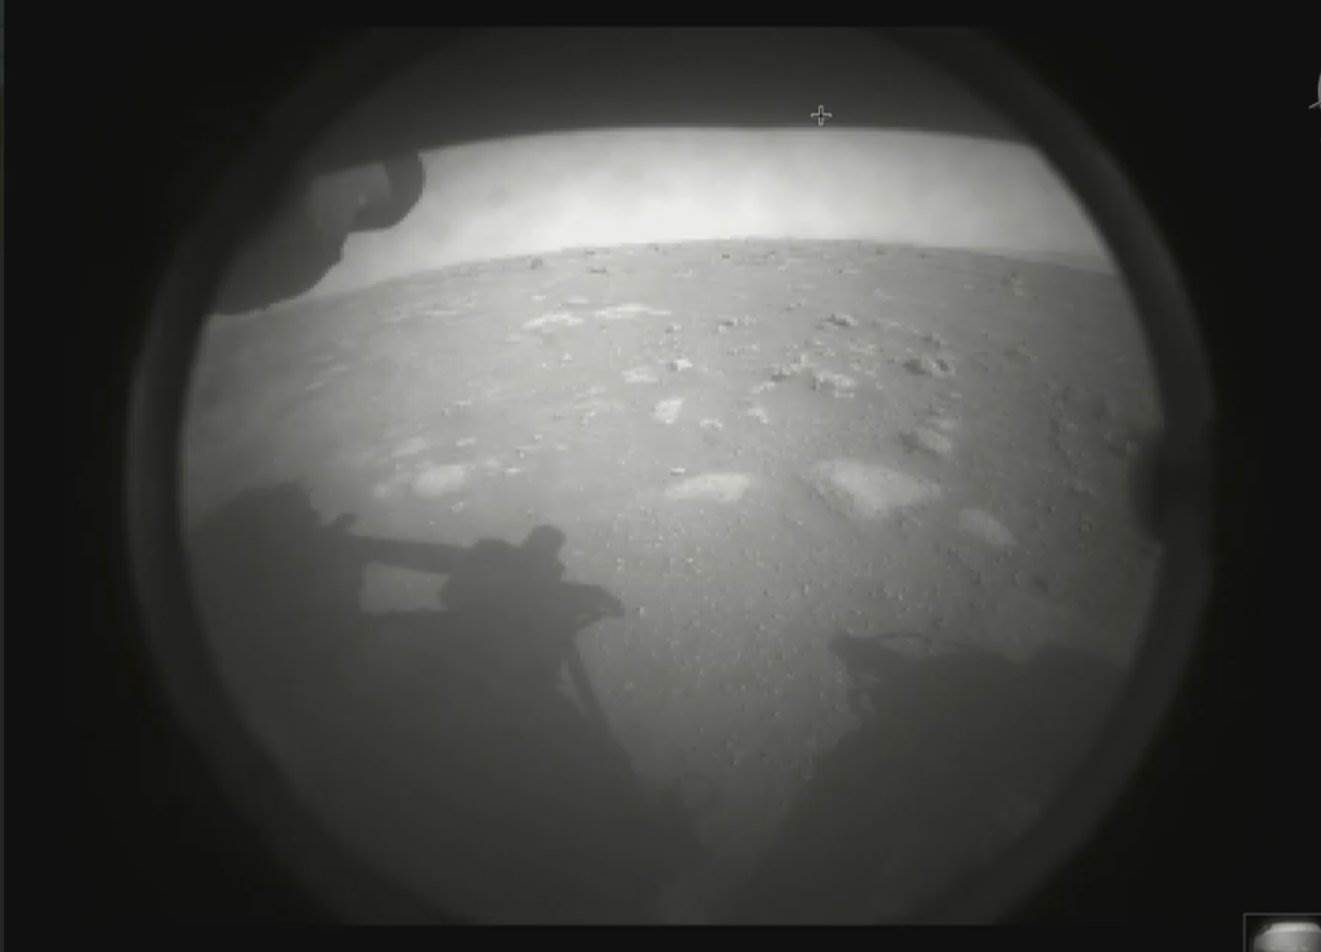  Jezero rover sletio na Mars 